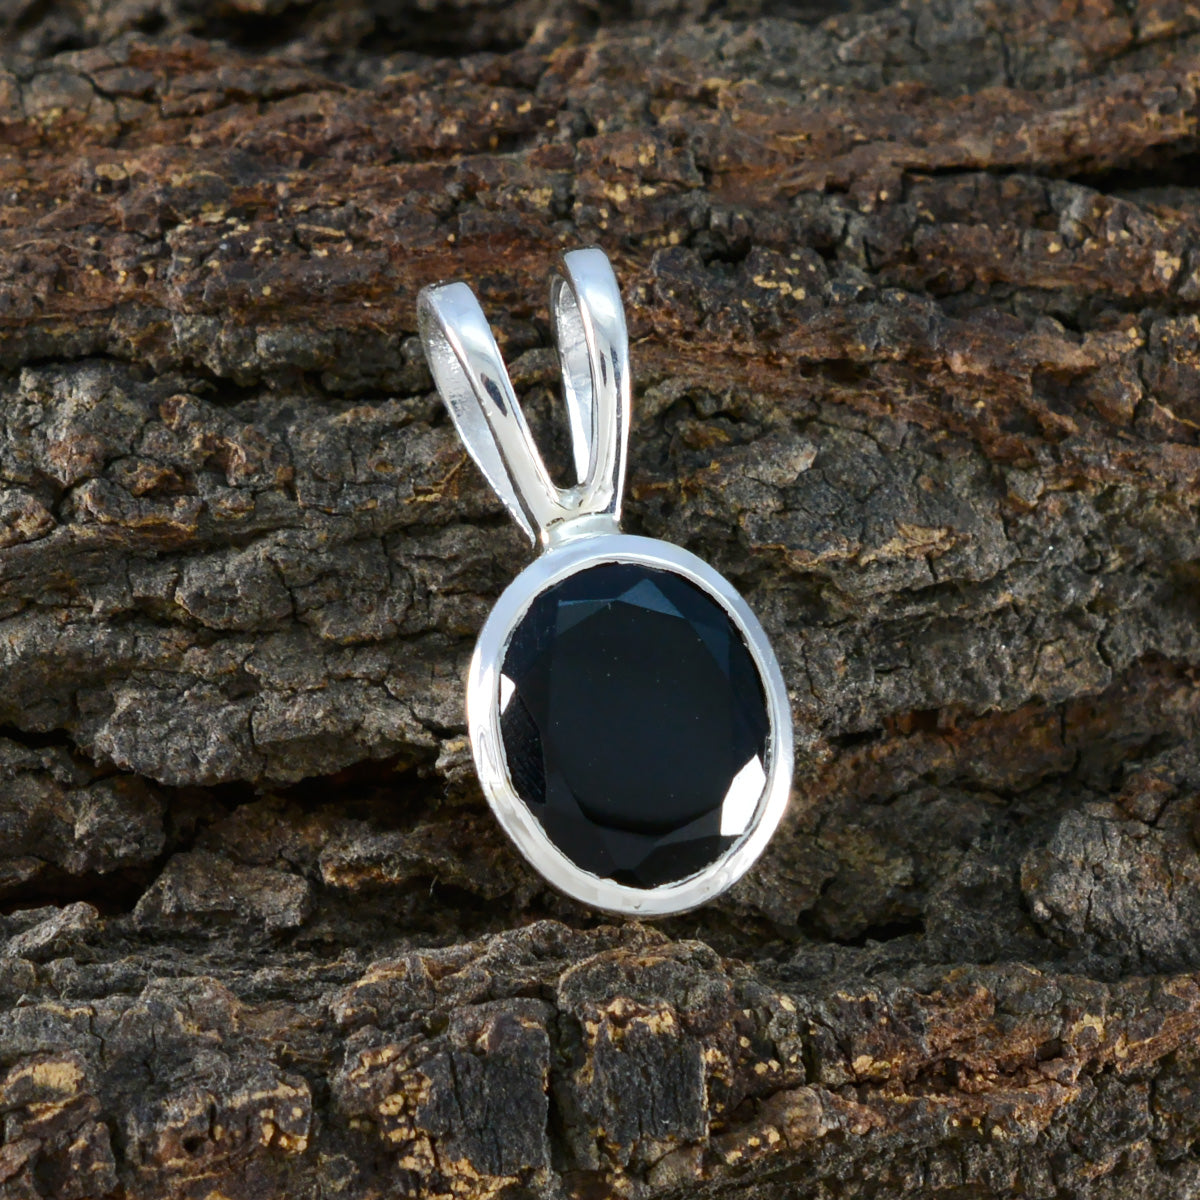 Riyo Graceful Gems runder facettierter Anhänger aus massivem Silber mit schwarzem schwarzen Onyx, Geschenk für Ostersonntag